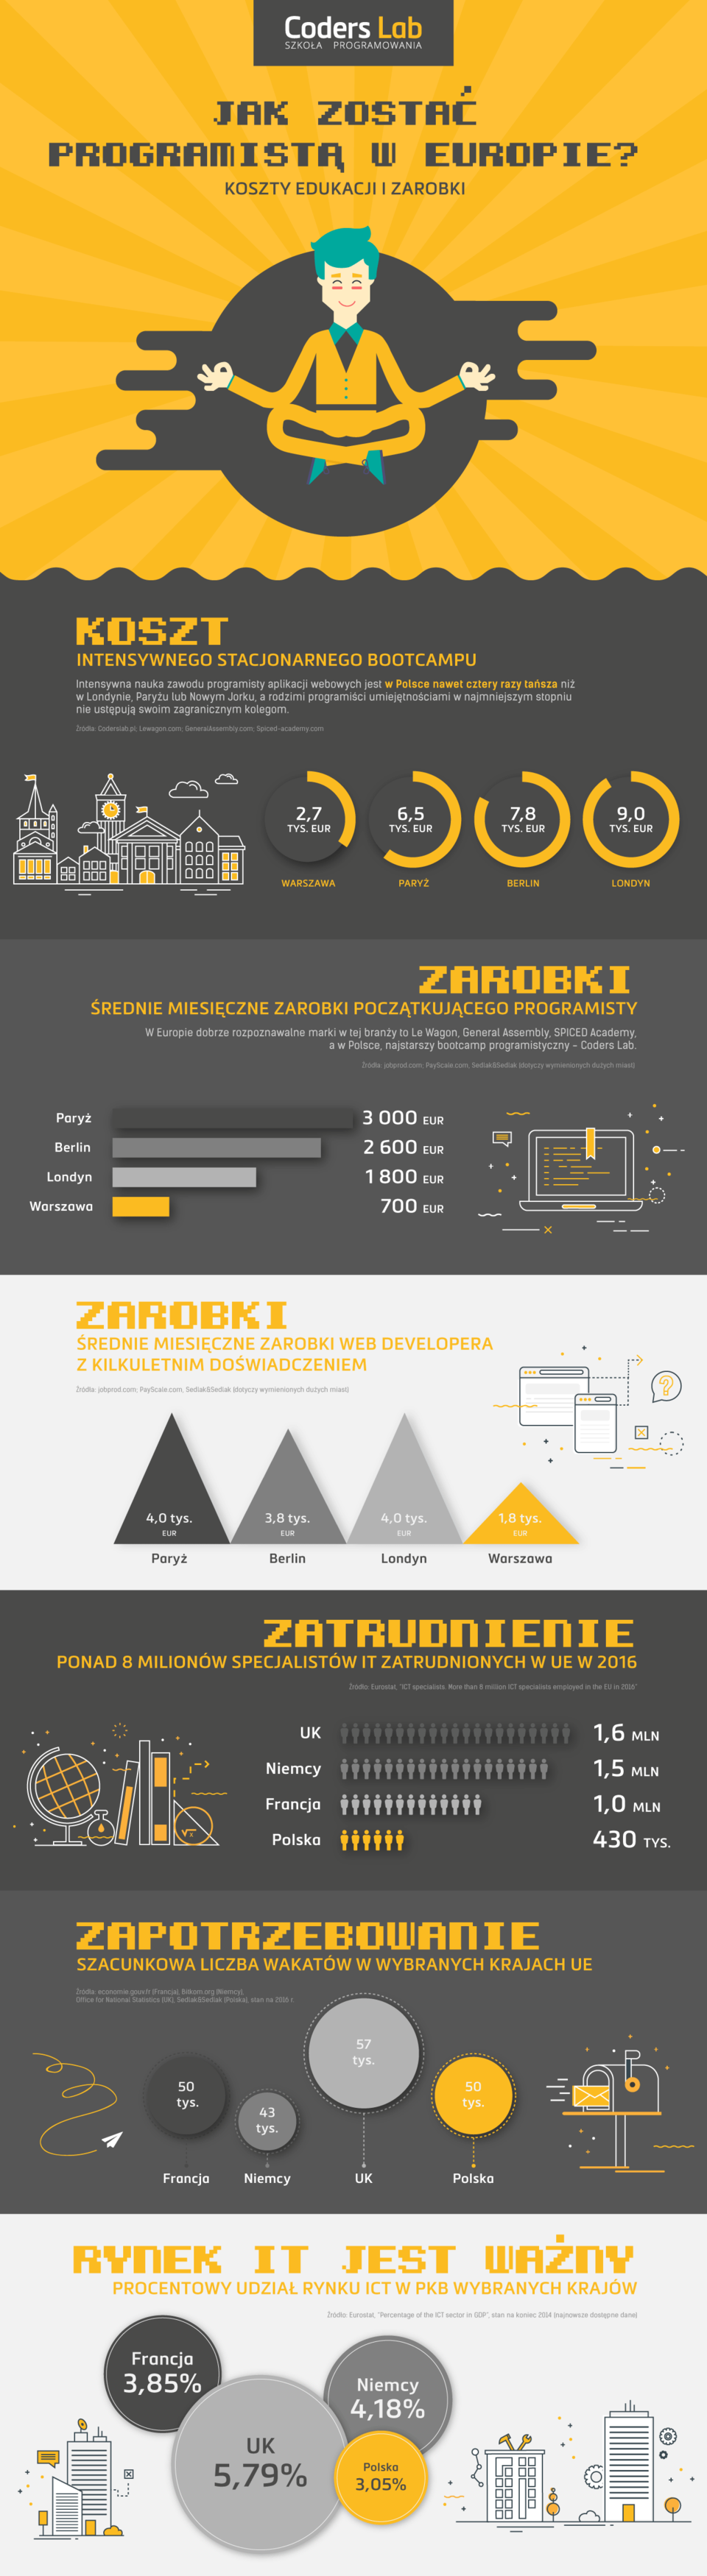 Programiści w Europie infografika